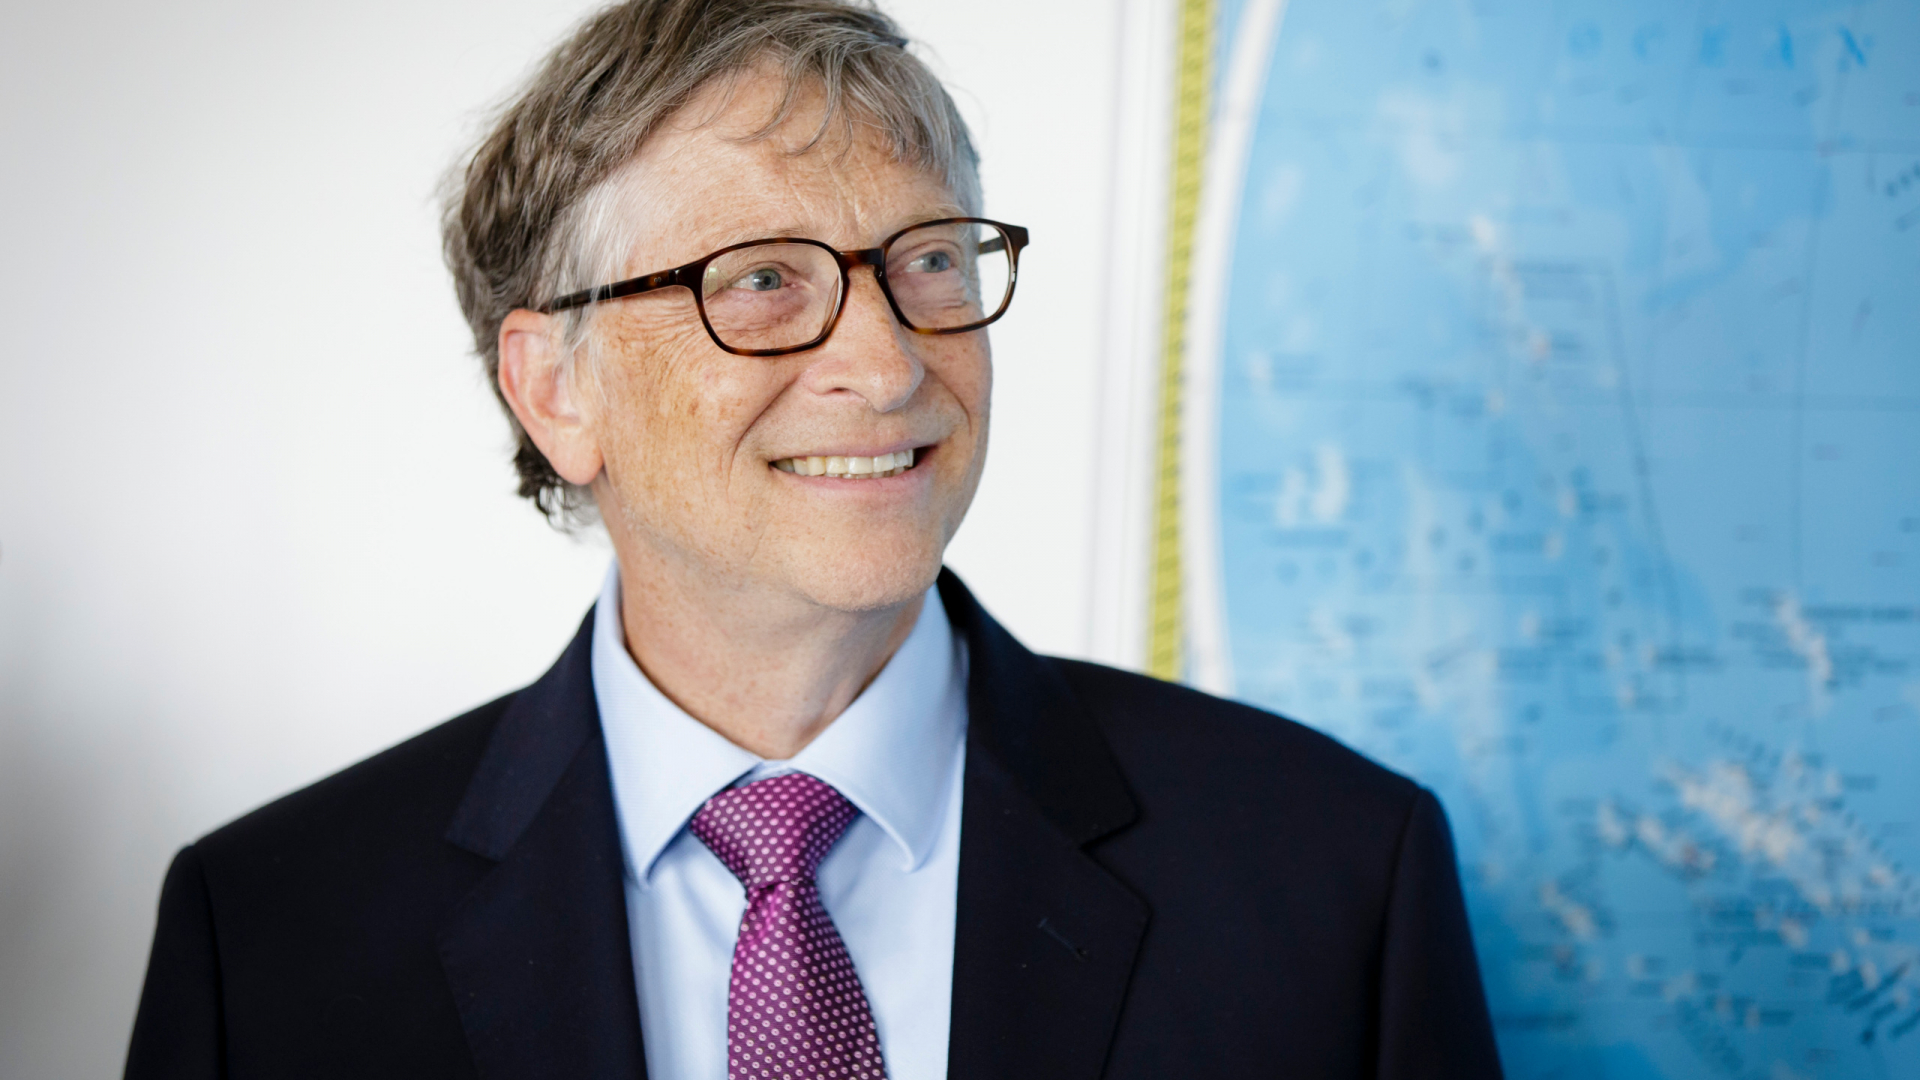 Lời khuyên của tỷ phú Bill Gates cho người trẻ: Hãy kết bạn một cách thông minh